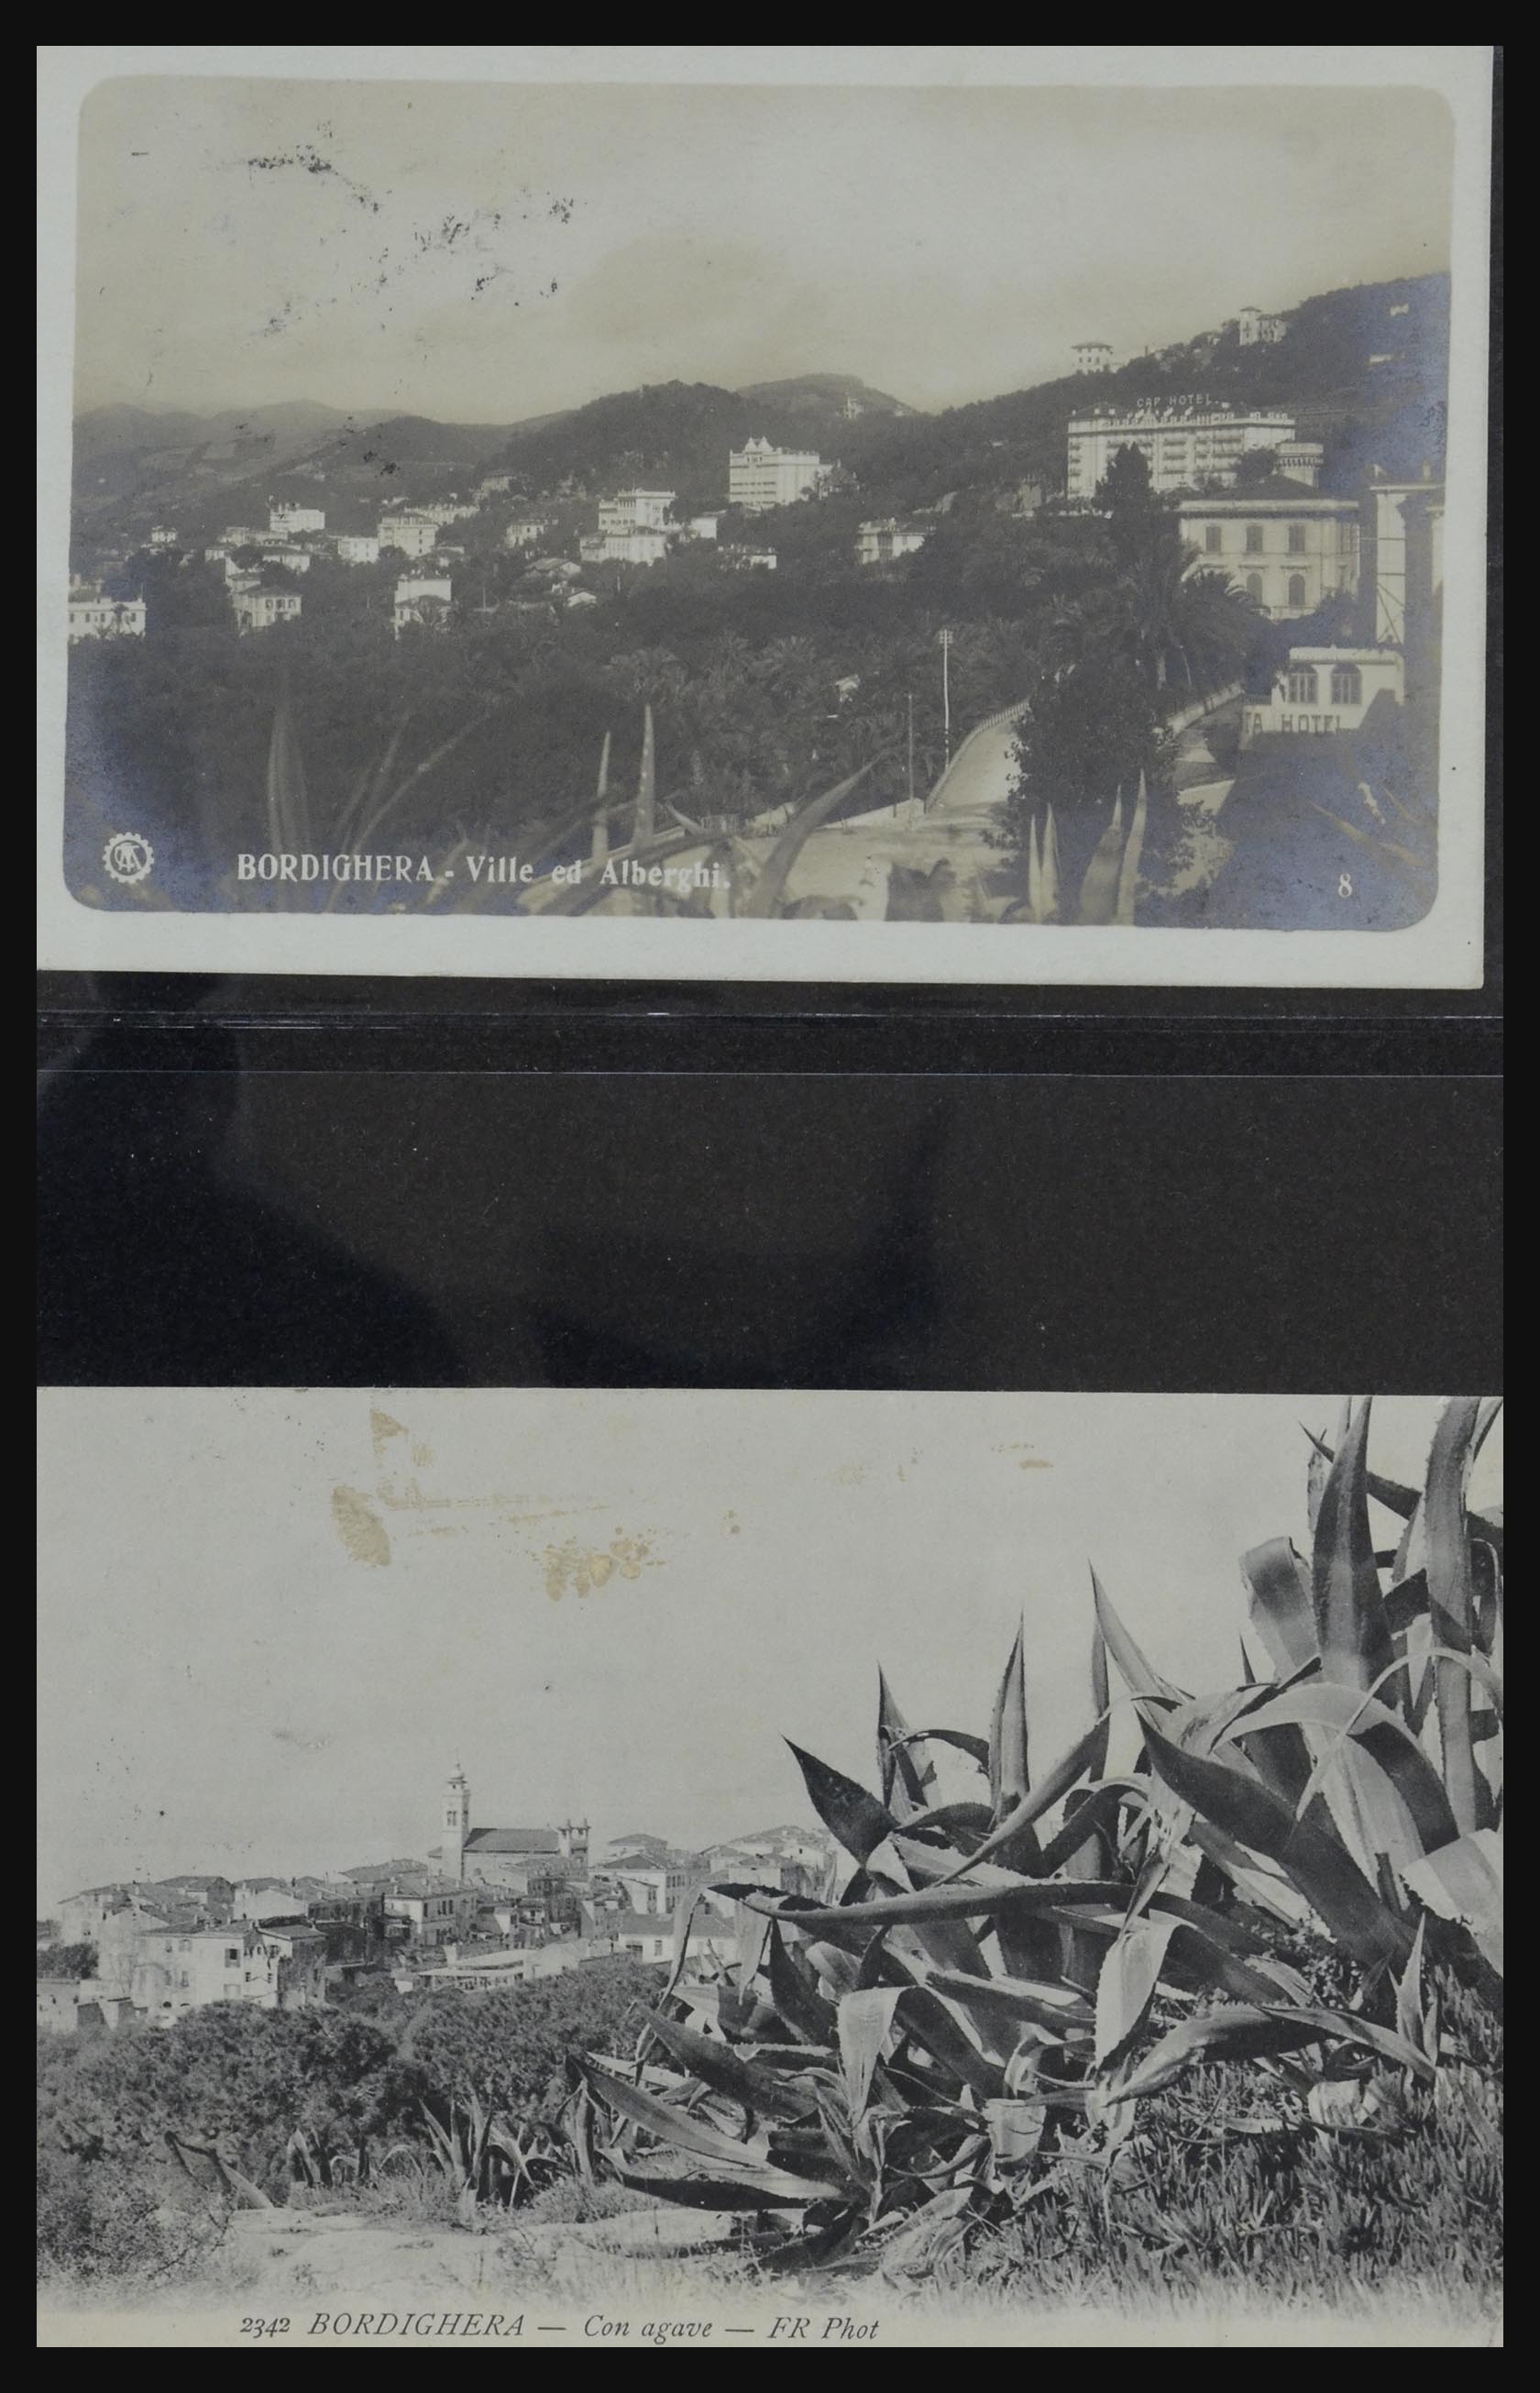 32255 0005 - 32255 Italië kaarten 1900-1945.